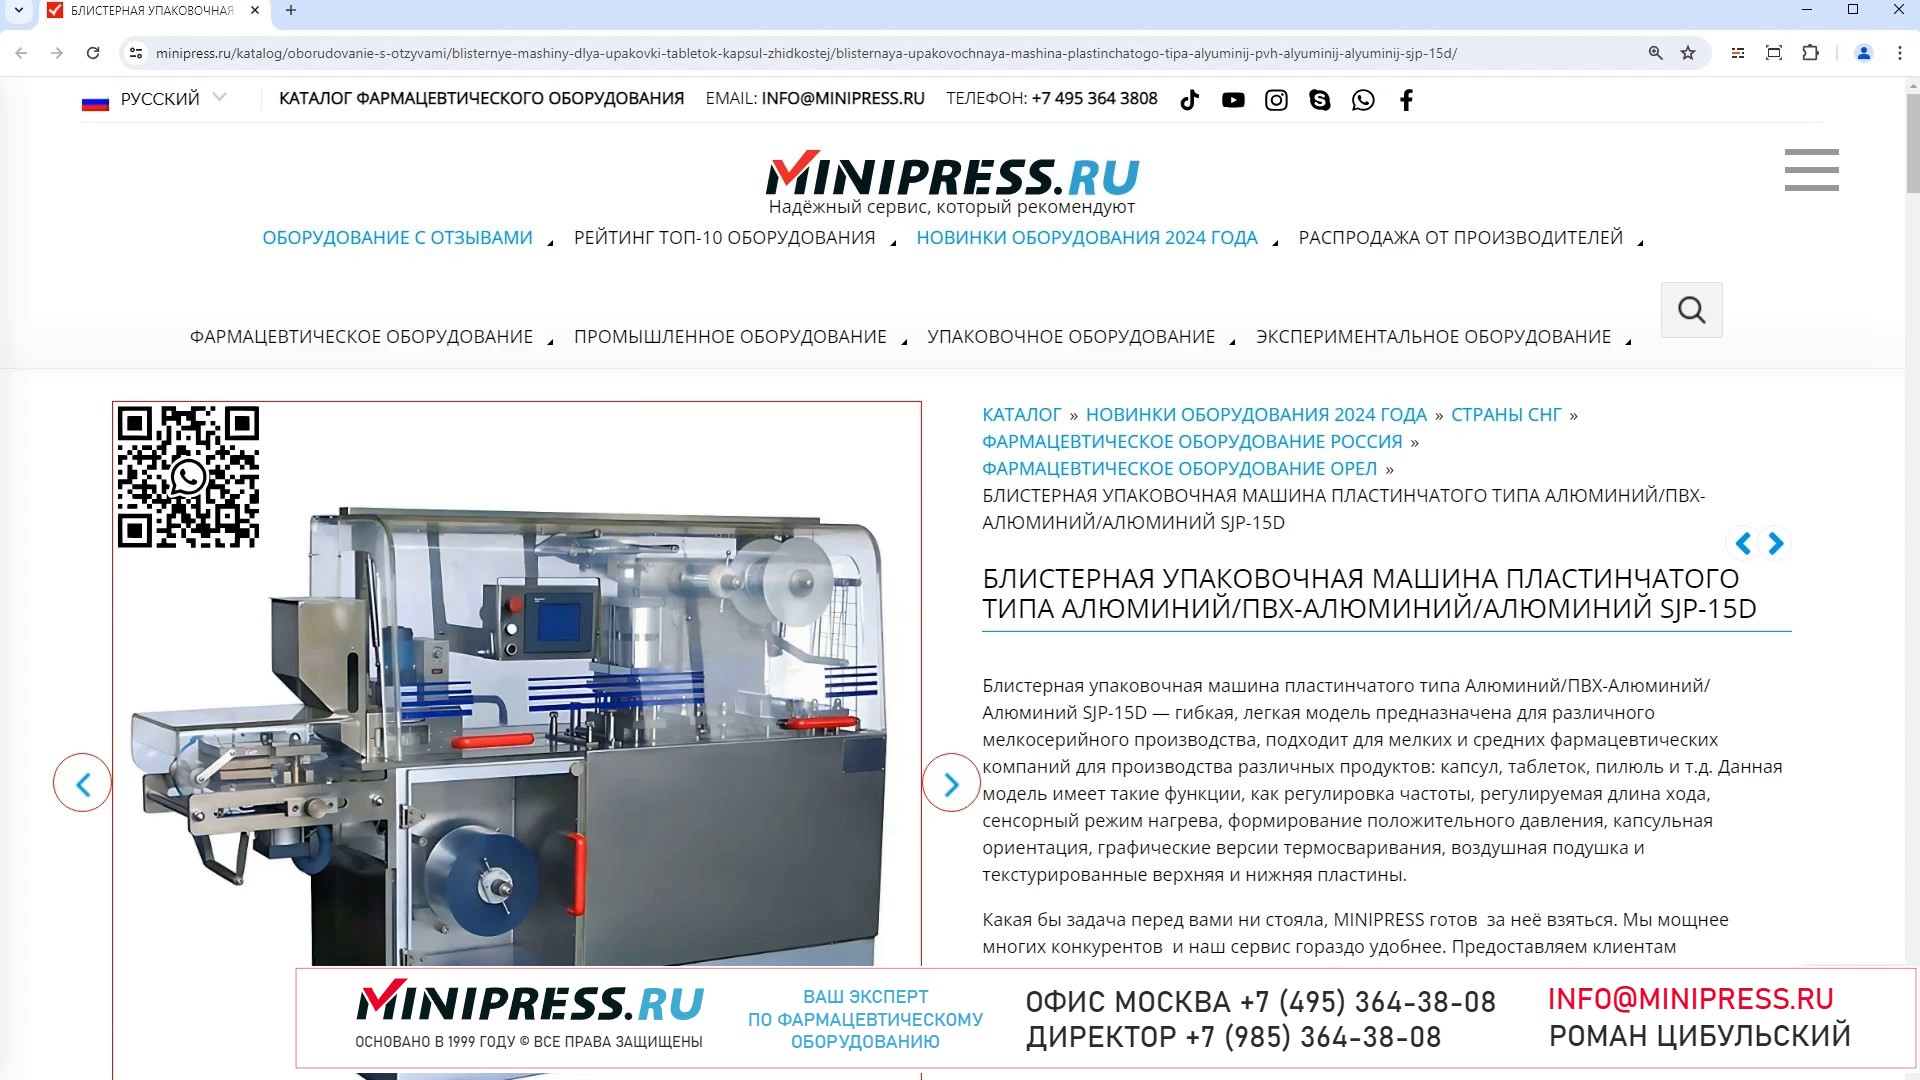 Minipress.ru Блистерная упаковочная машина пластинчатого типа АлюминийПВХ-АлюминийАлюминий SJP-15D